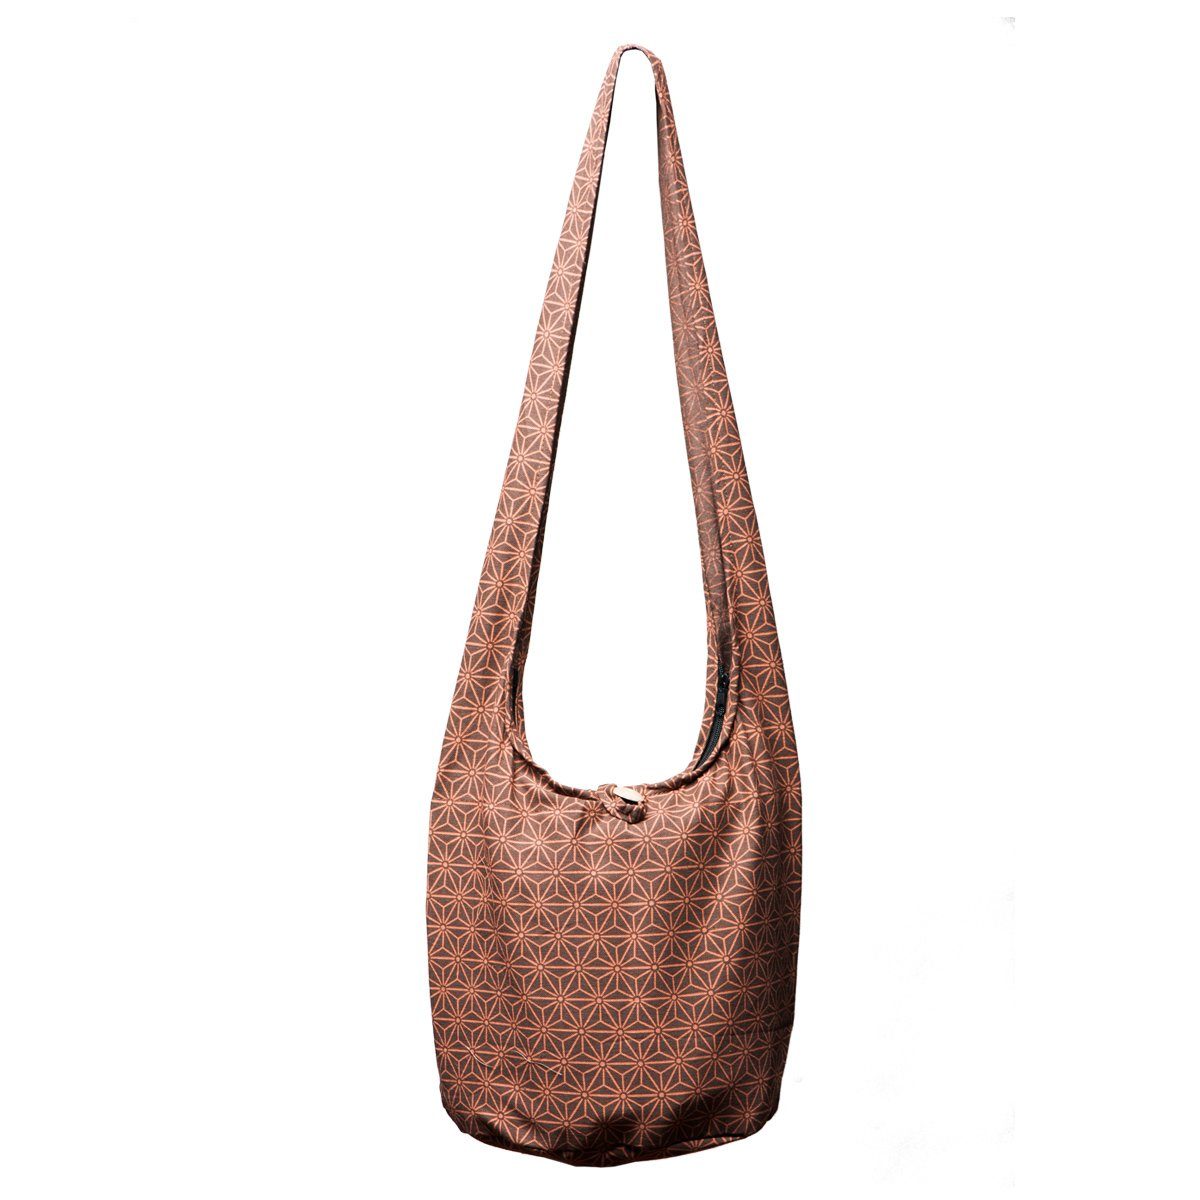 PANASIAM Schultertasche Geometrix Schulterbeutel aus 100% Baumwolle praktische Umhängetasche, In 2 Größen Beuteltasche auch als Wickeltasche und Handtasche geeignet